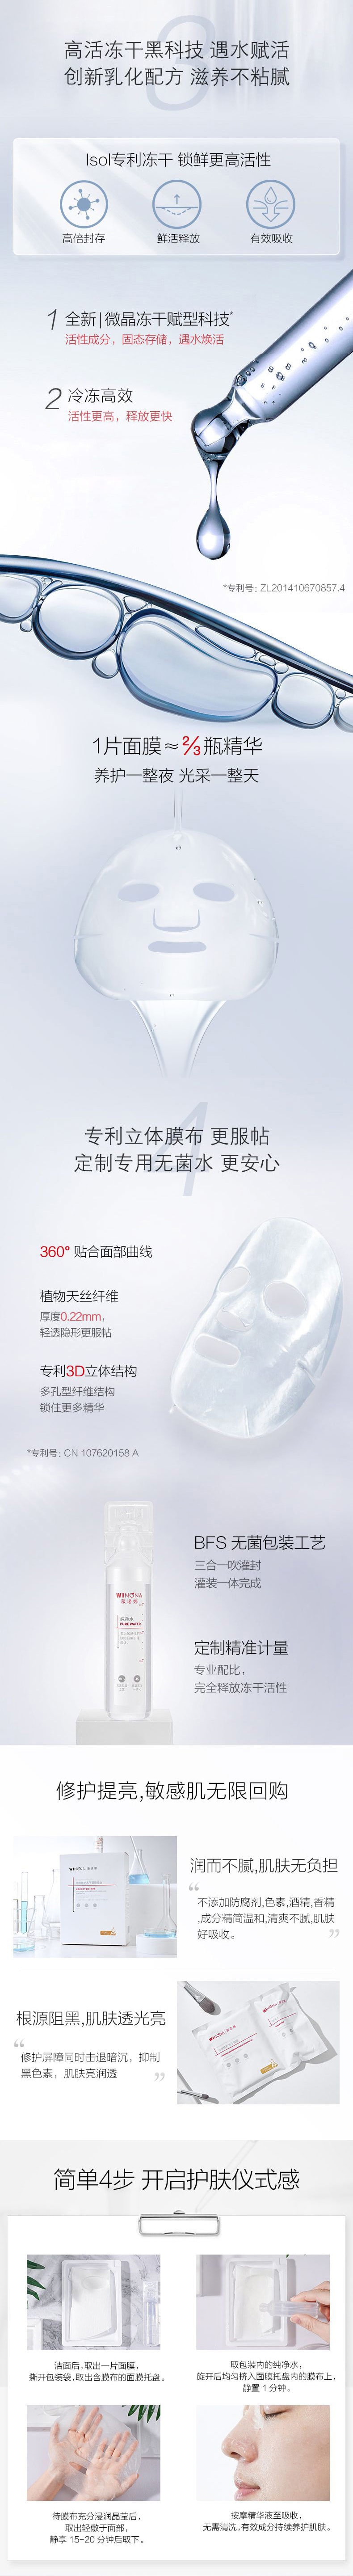 中国薇诺娜(WINONA)光感修护冻干面膜6片/盒 保湿 面膜 亮白肌肤 提亮修护敏感肌【直降叠优惠券叠满赠】拉新价